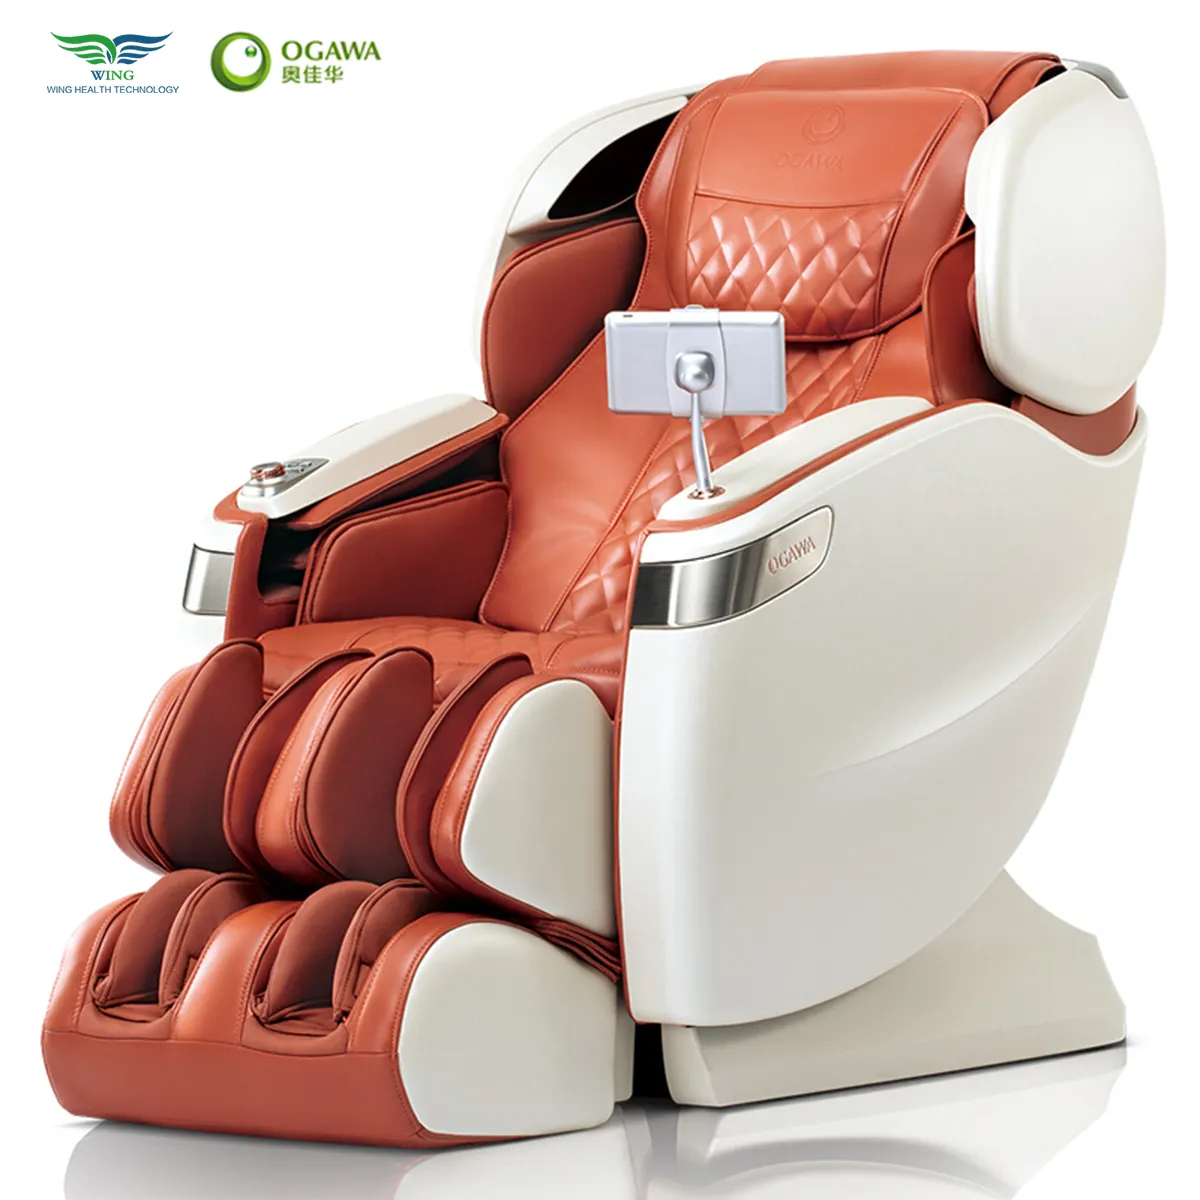 2023 prezzo intero corpo spazio automatico cabina di lusso cura delle articolazioni supporto crista deepl 4d sedia da massaggio intelligente con riscaldamento rilassante a buon mercato